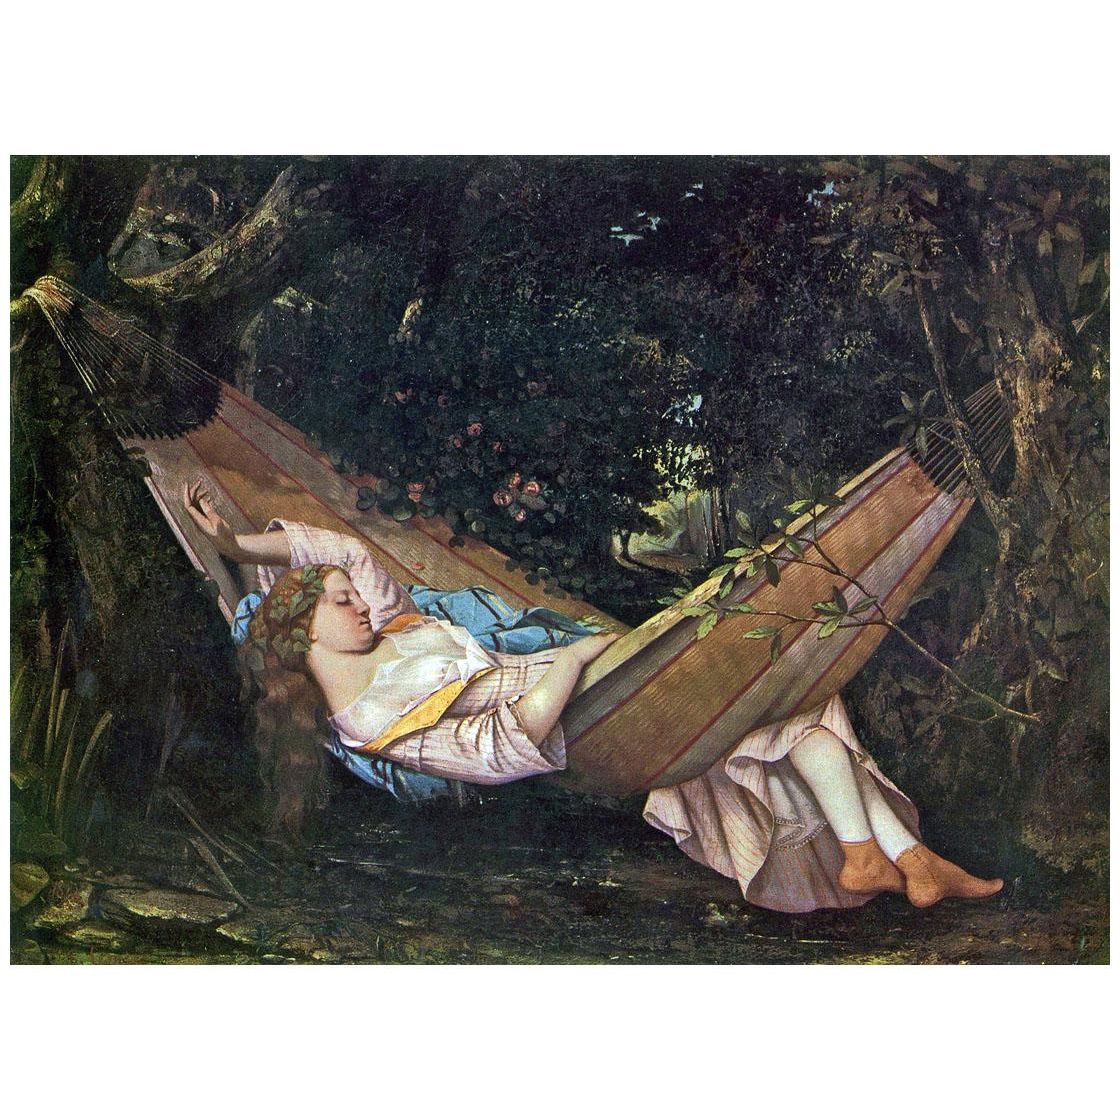 Gustave Courbet. Le Reve. 1844. Kunst Museum Winterthur